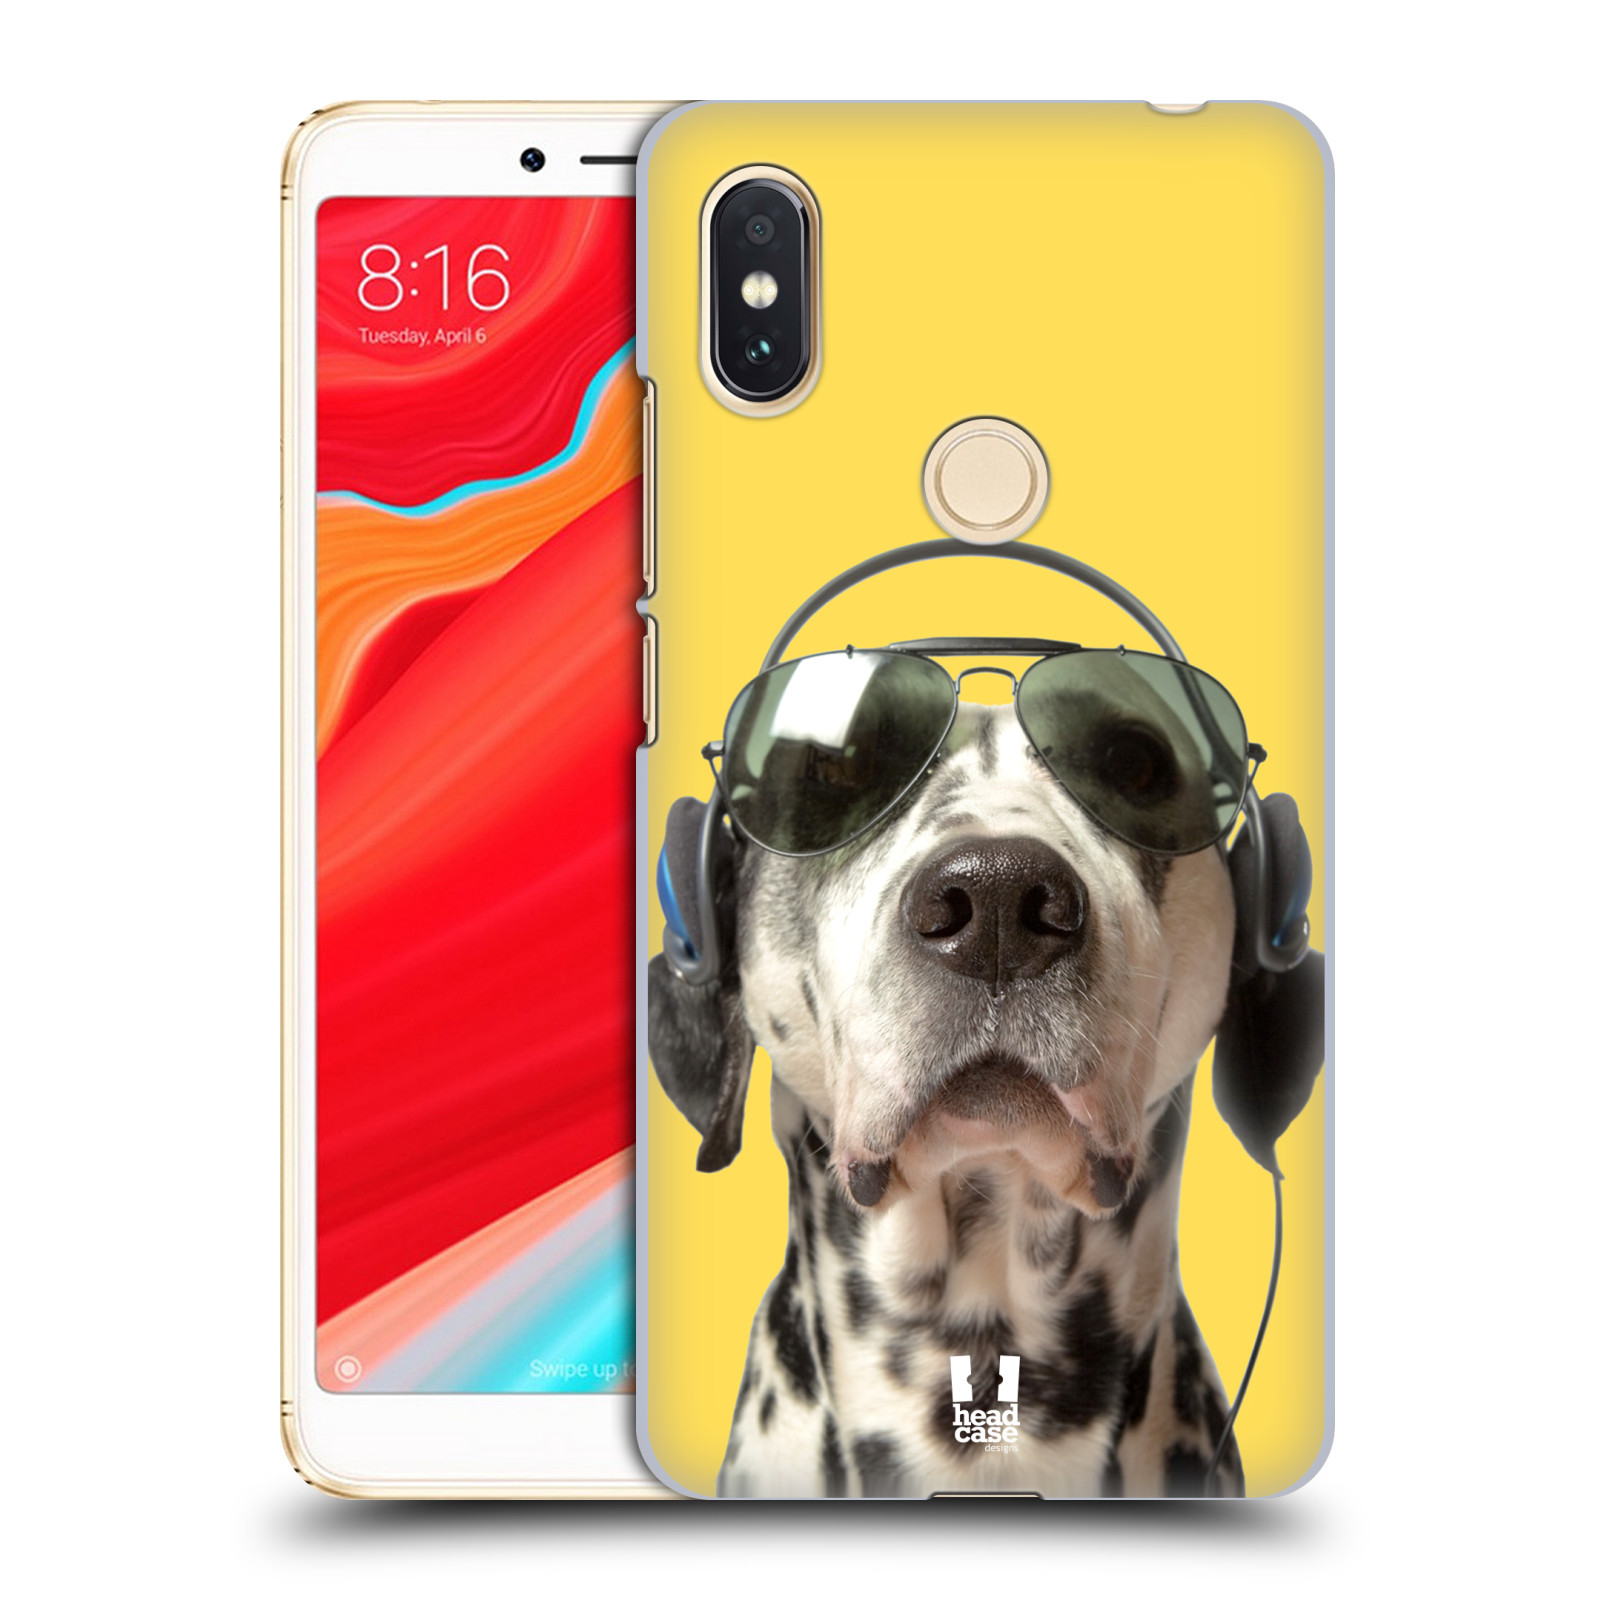 HEAD CASE plastový obal na mobil Xiaomi Redmi S2 vzor Legrační zvířátka dalmatin se sluchátky žlutá